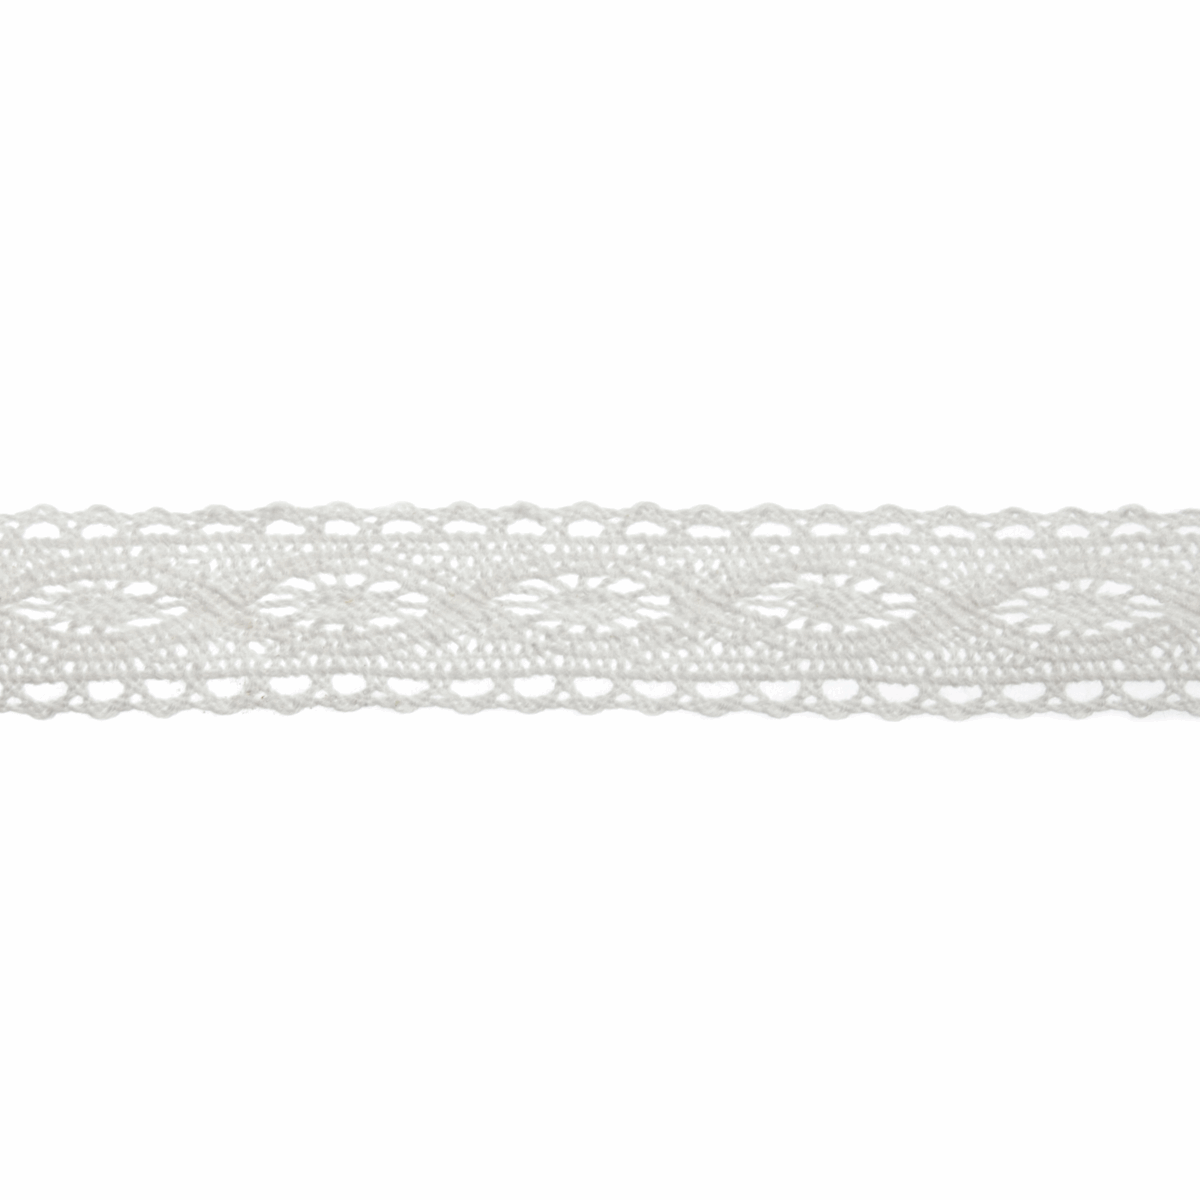 Bowtique Cream Cotton Lace - 5m x 20mm